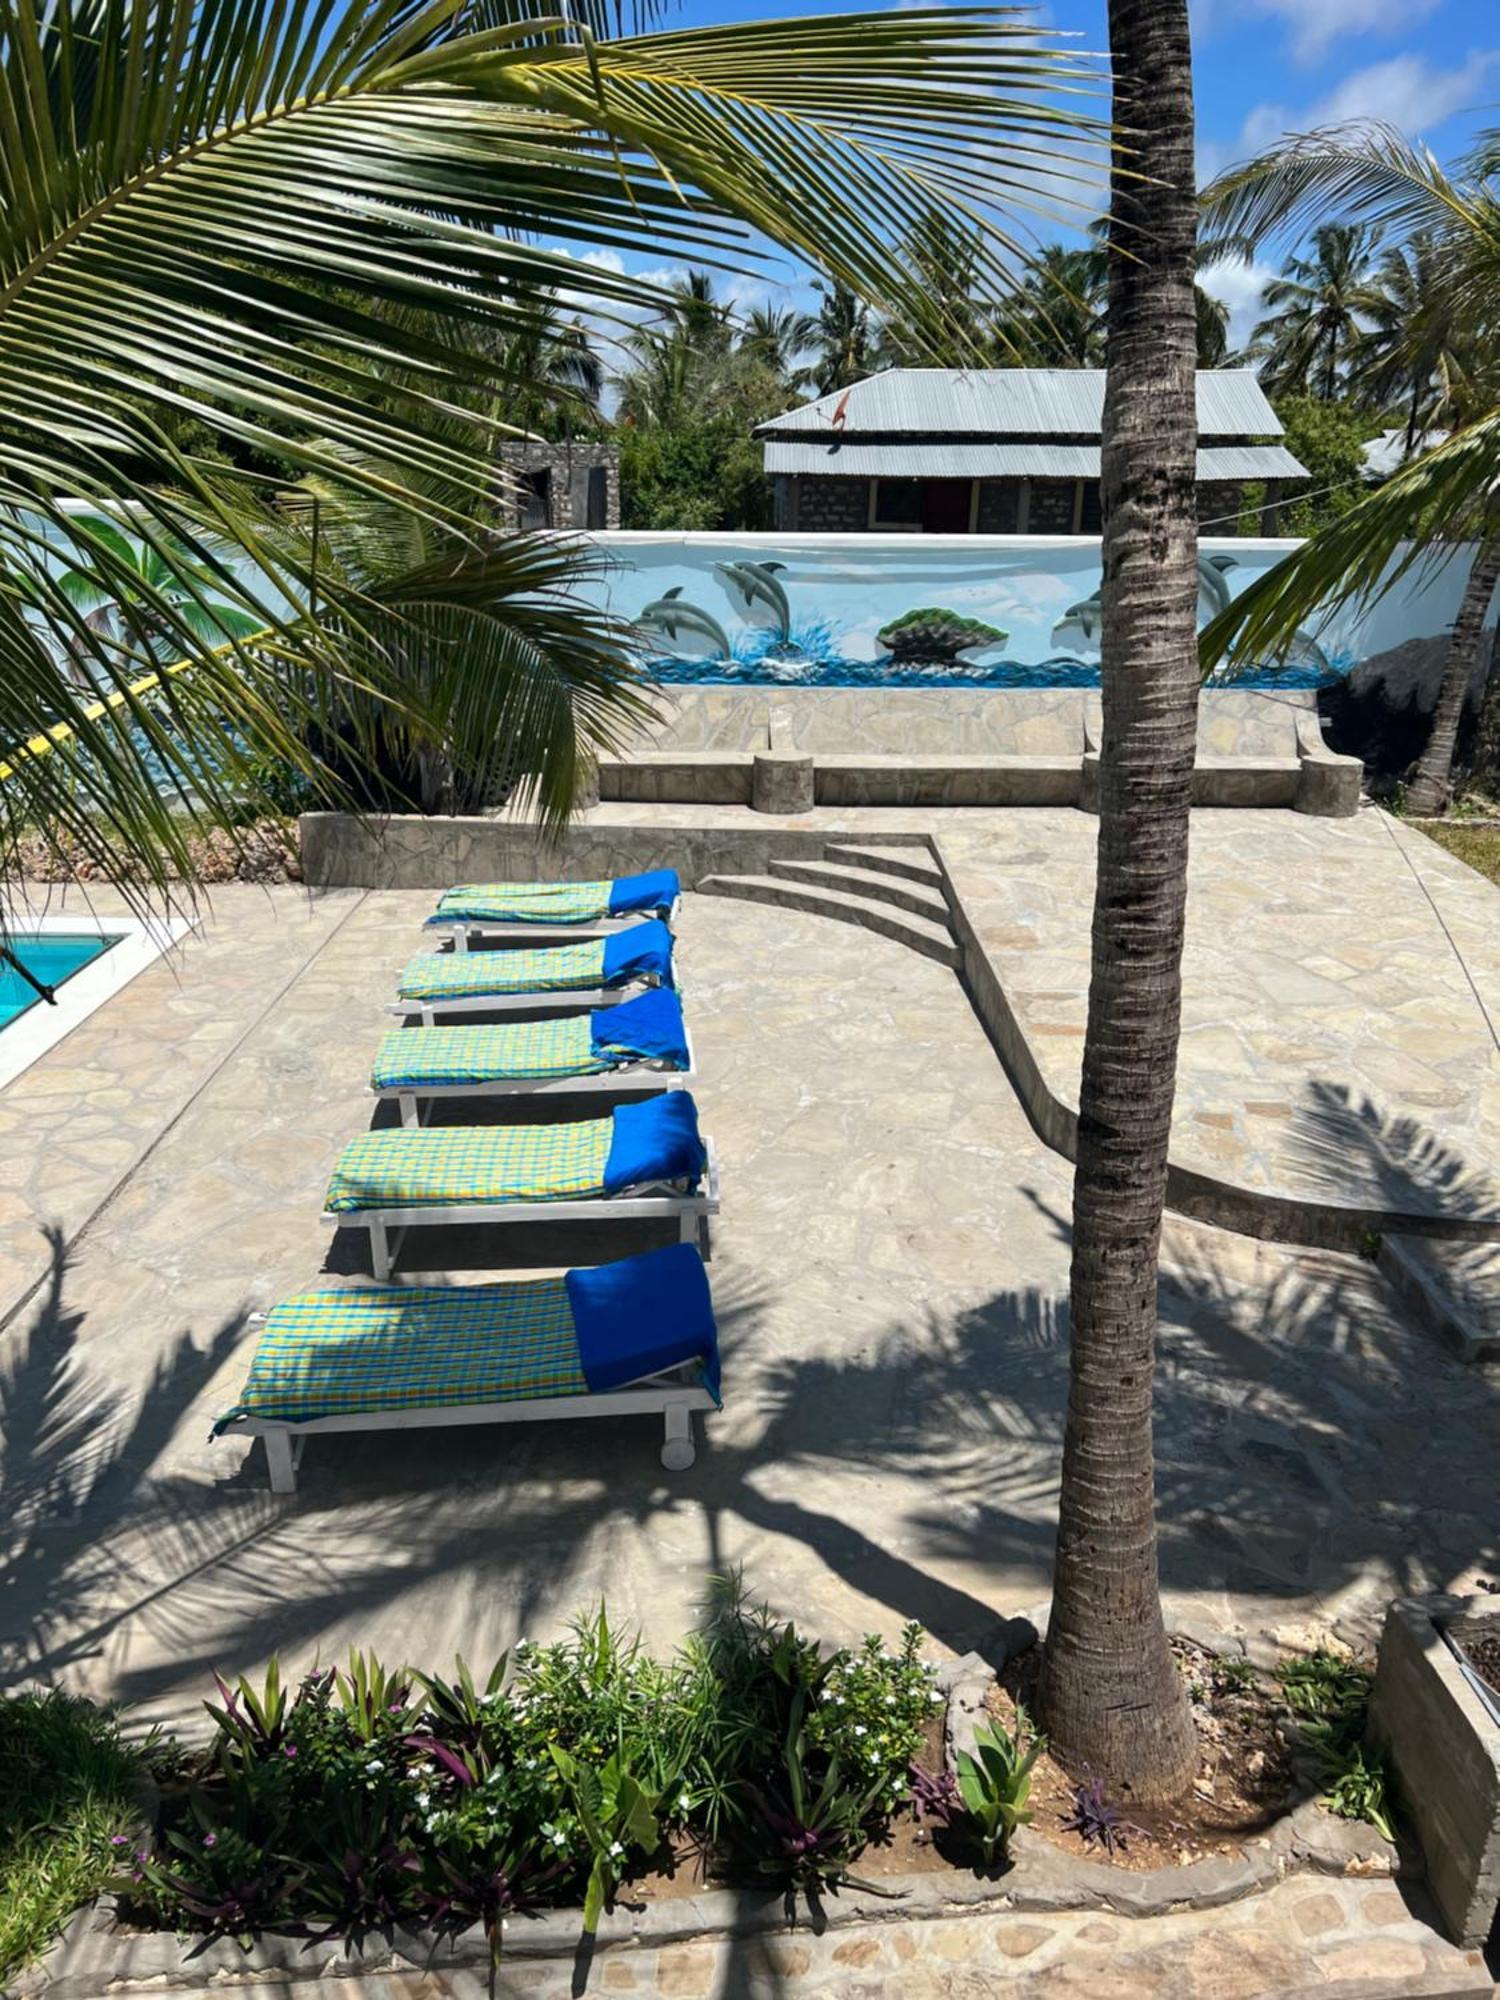 Avana Resort Watamu Exterior photo